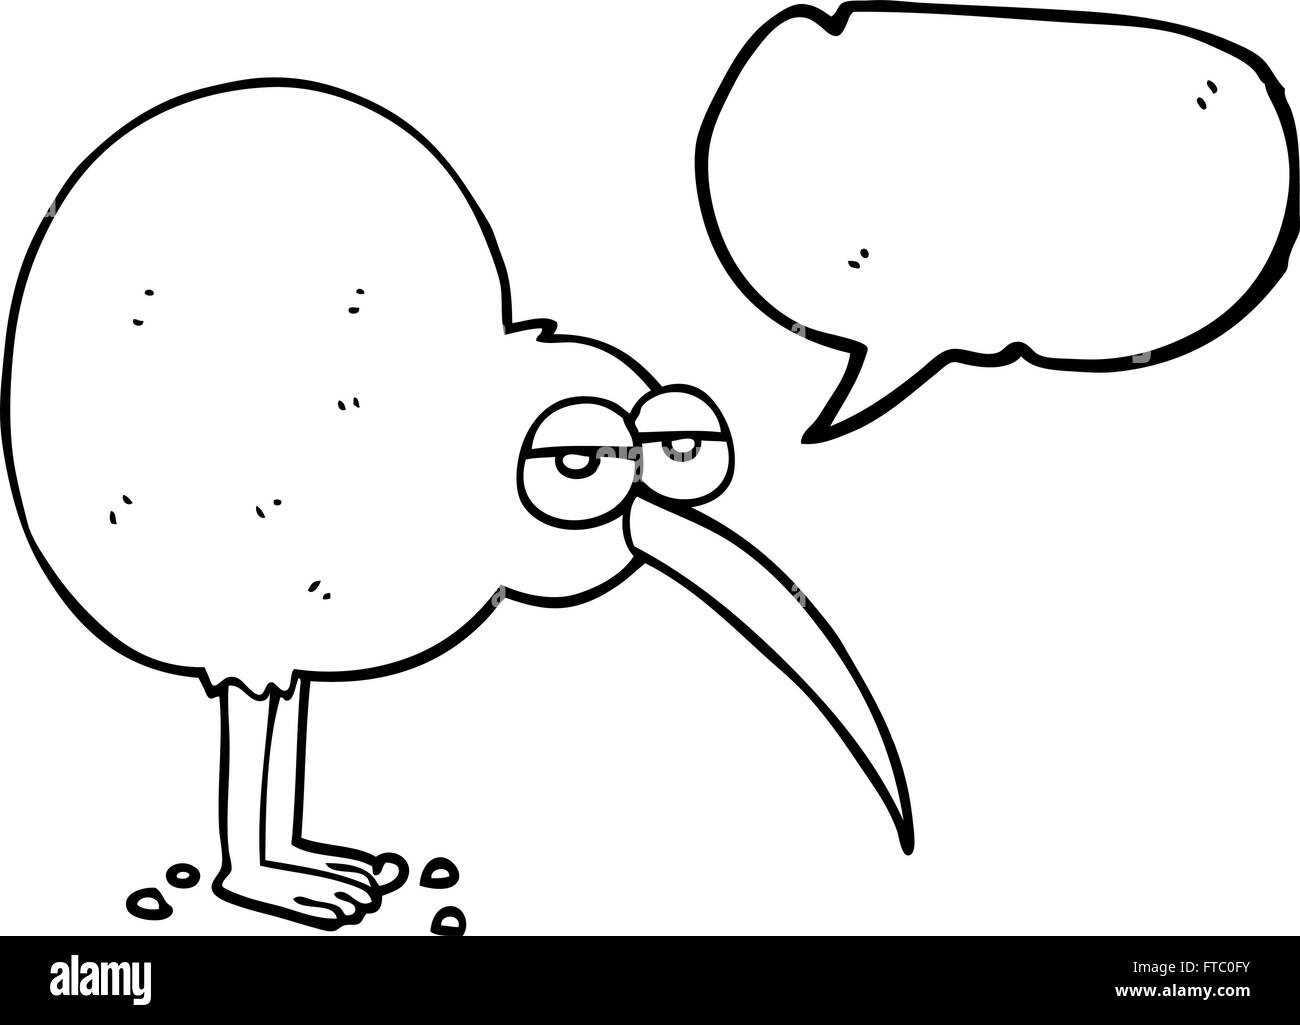 Freihändig gezeichnete Speech Bubble Cartoon kiwi Stock Vektor